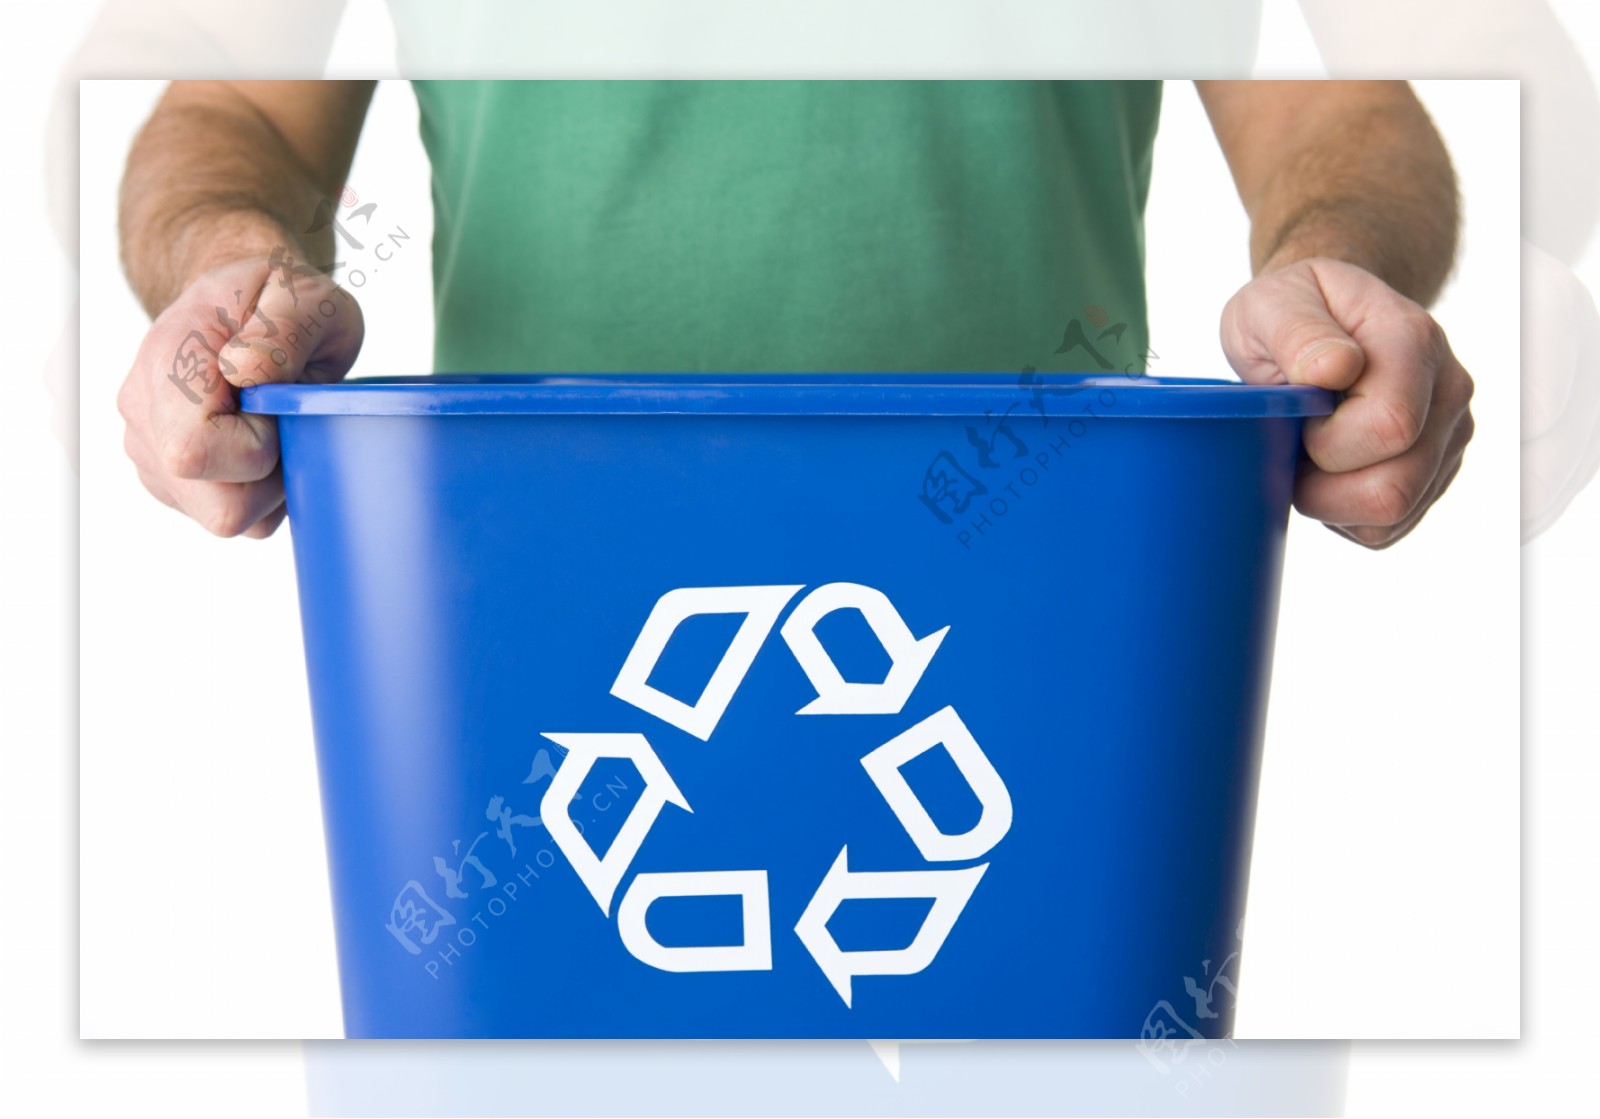 垃圾桶循环标志图片